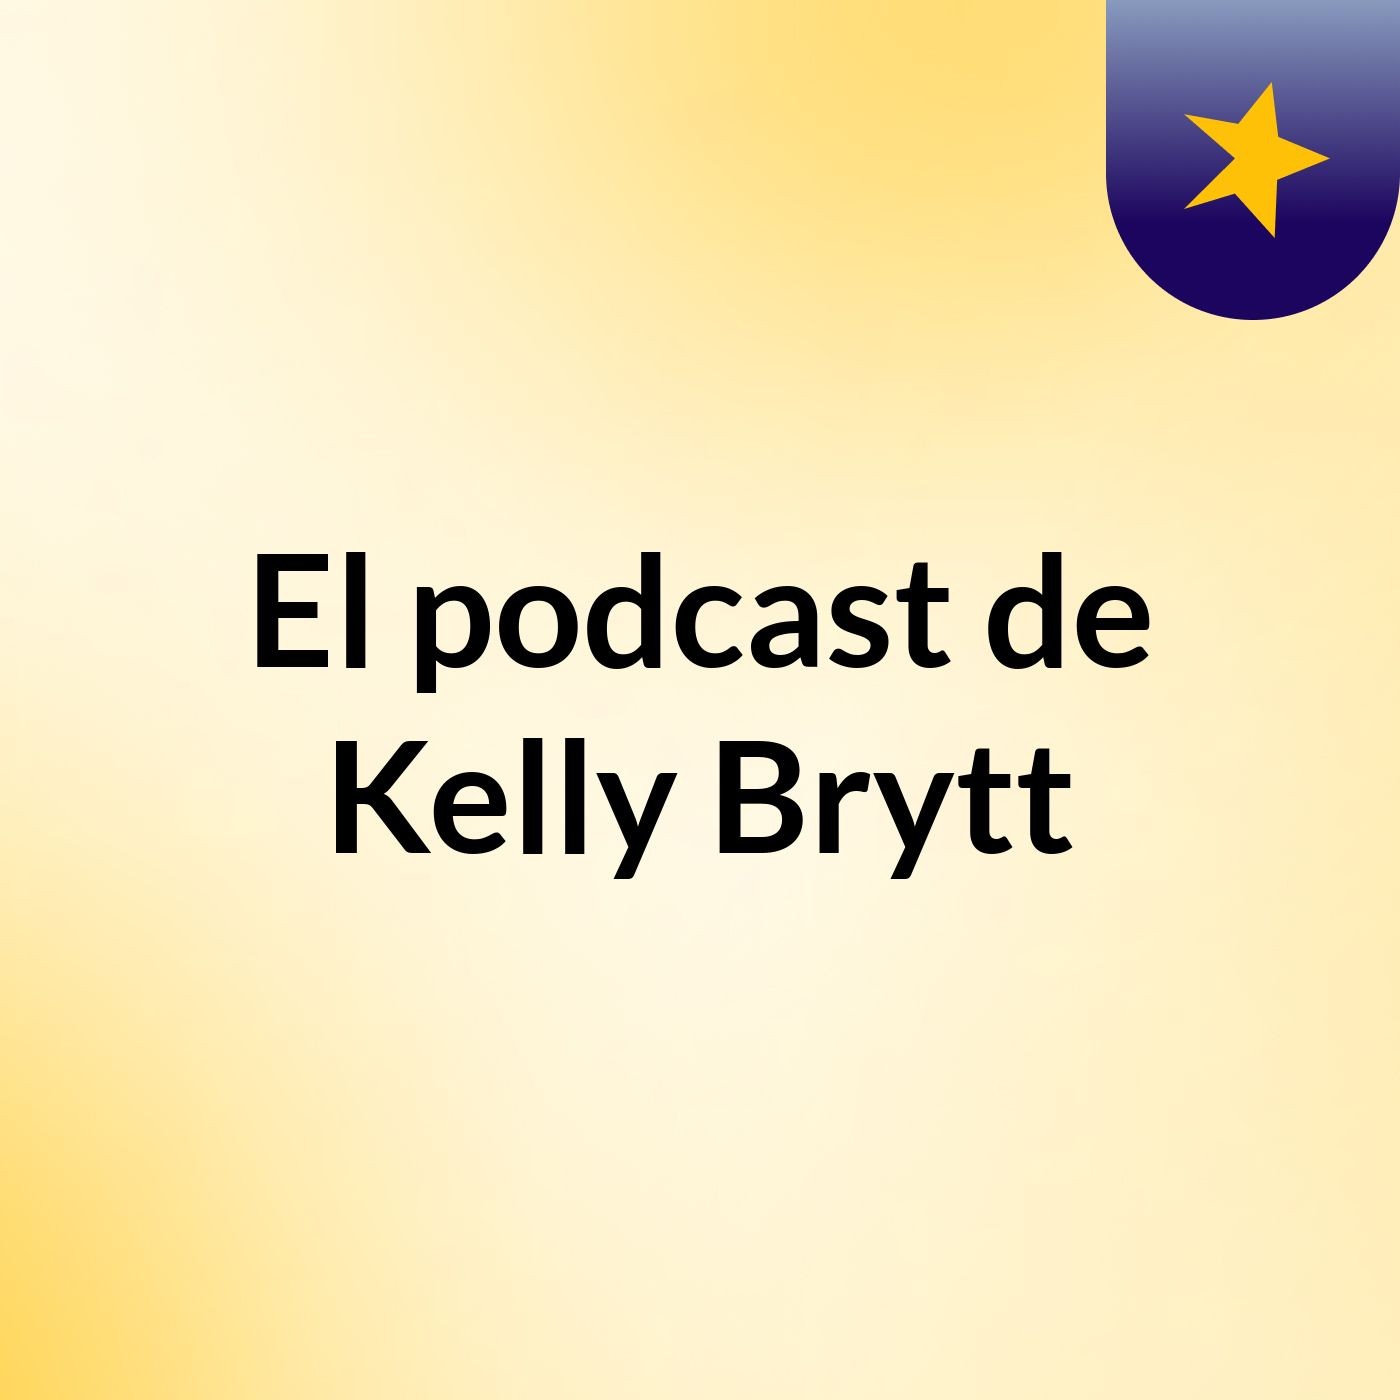 El podcast de Kelly Brytt